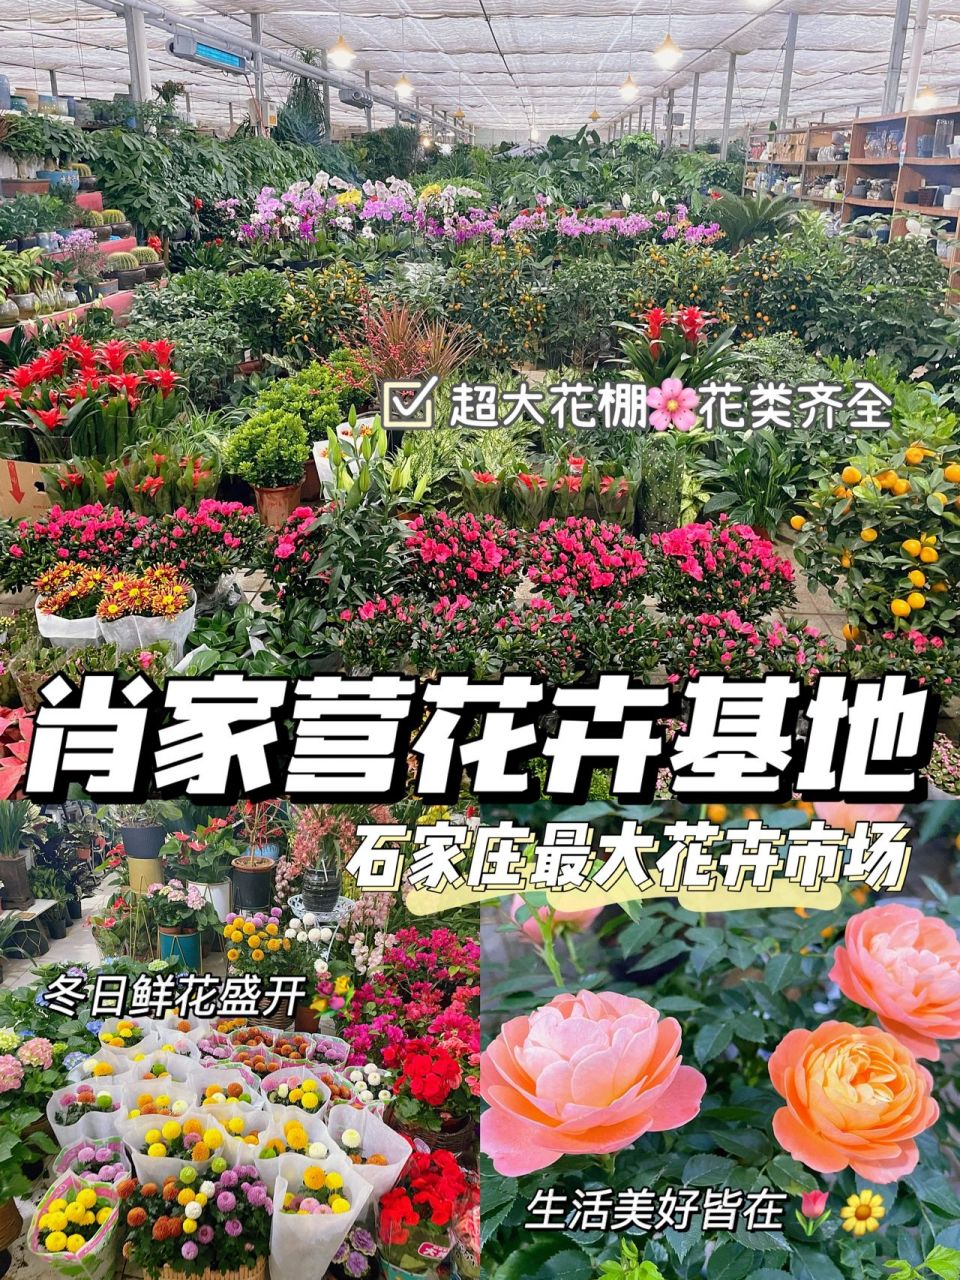 华洲路龙大花卉市场图片